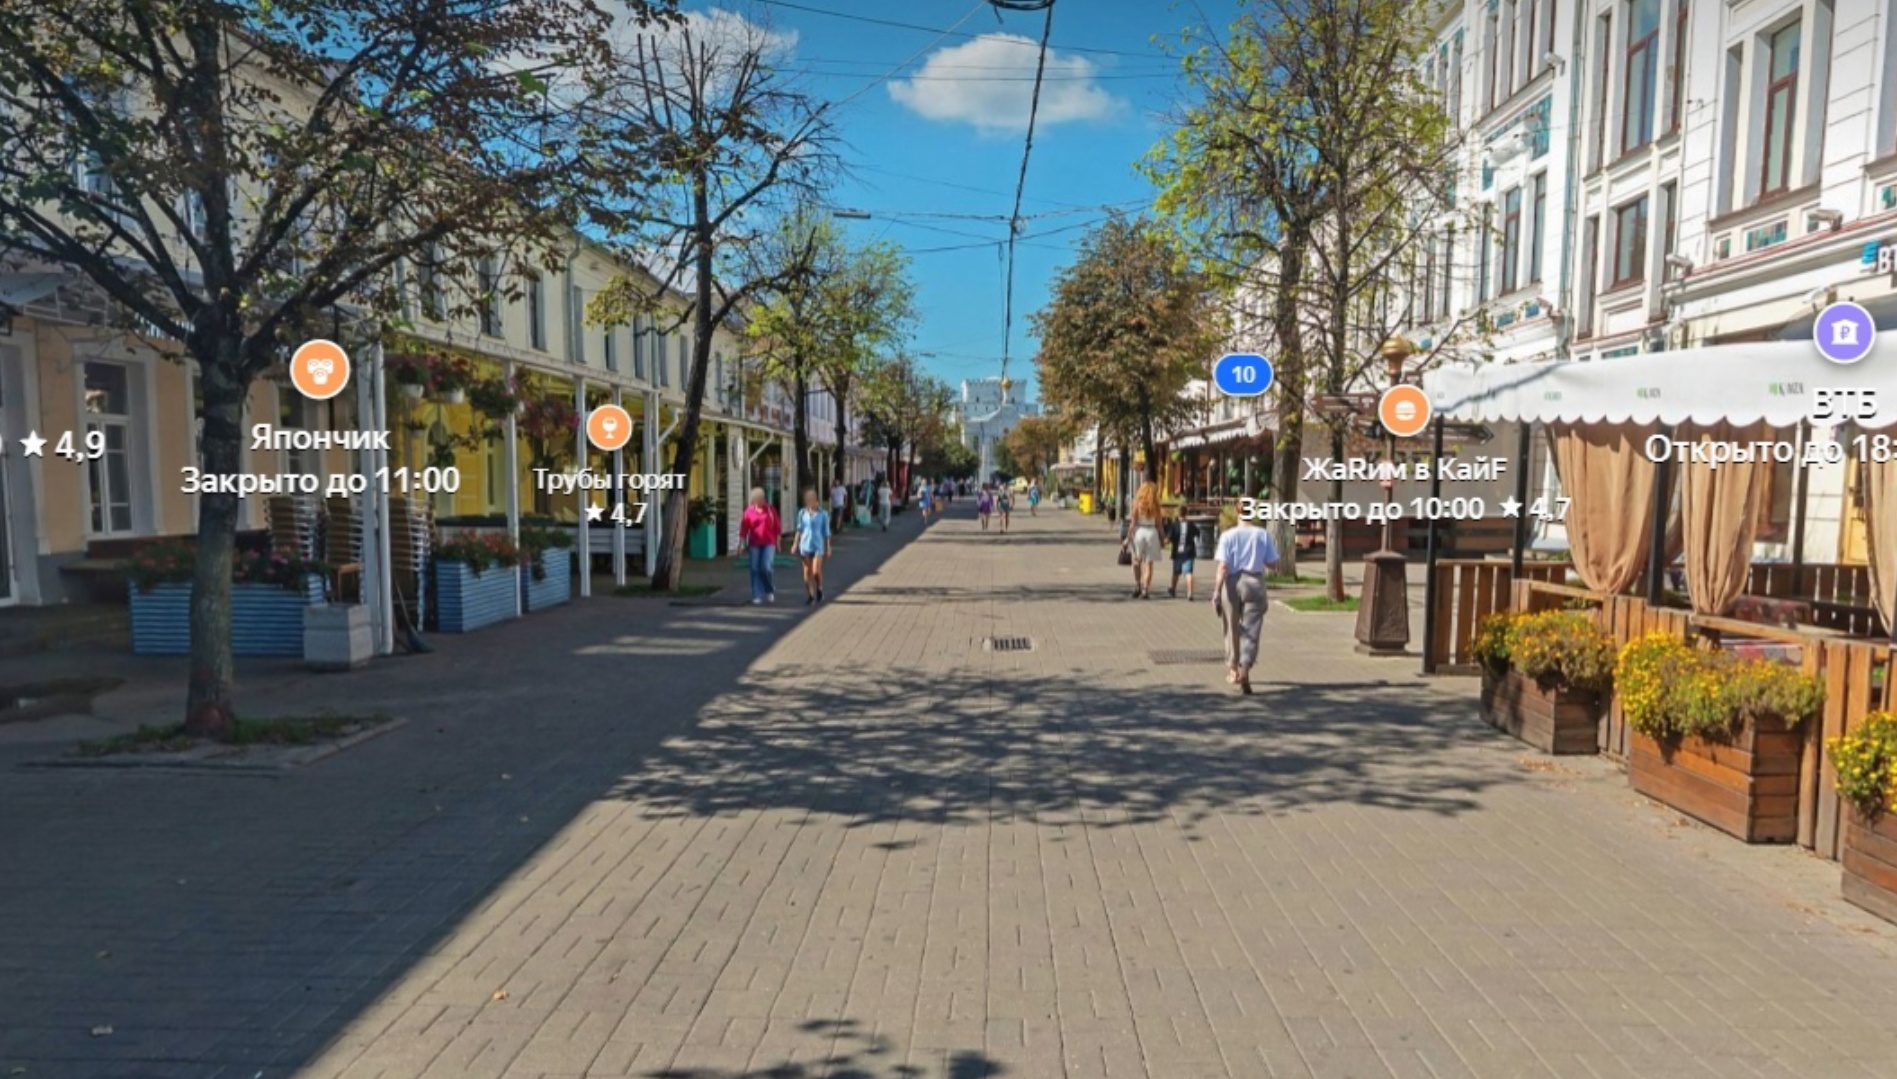 В Ярославле выделят 450 миллионов рублей на капитальный ремонт улицы Кирова